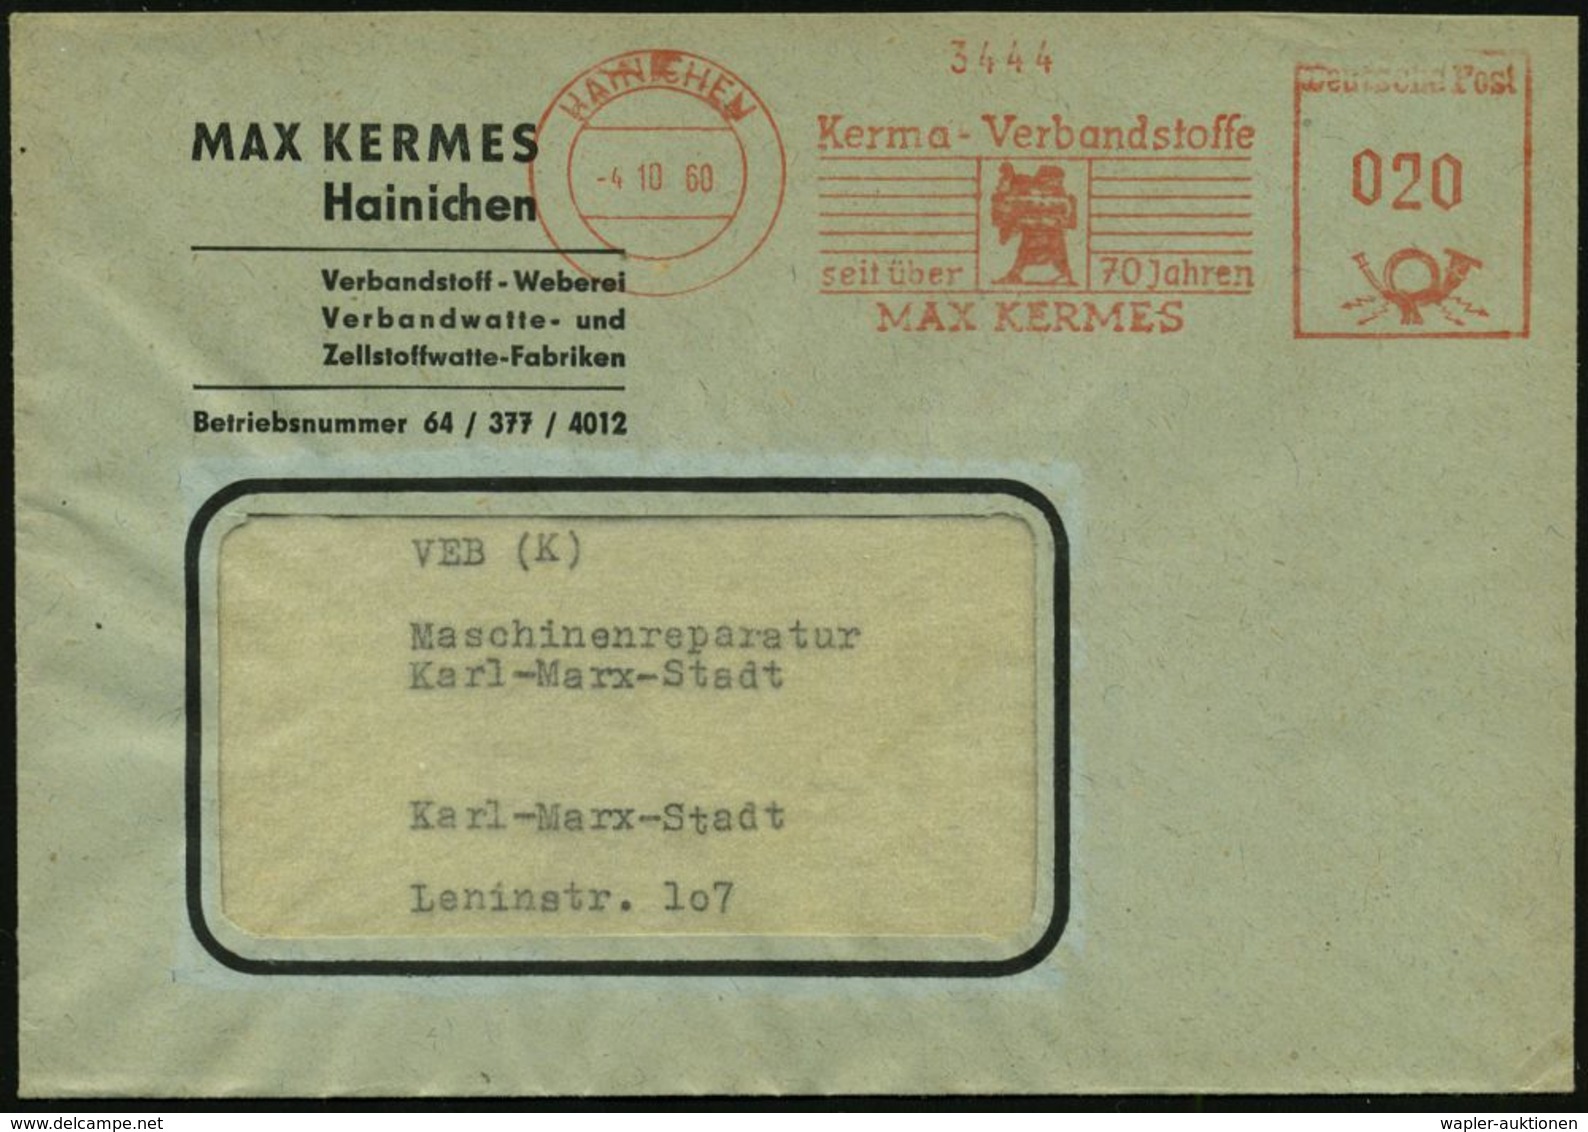 MEDIZINISCHE AUSRÜSTUNG & INSTRUMENTE : HAINICHEN/ Kerma-Verbandsstoffe/ Seit über 70 Jahren/ MAX KERMES 1960 (4.10.) AF - Medicine